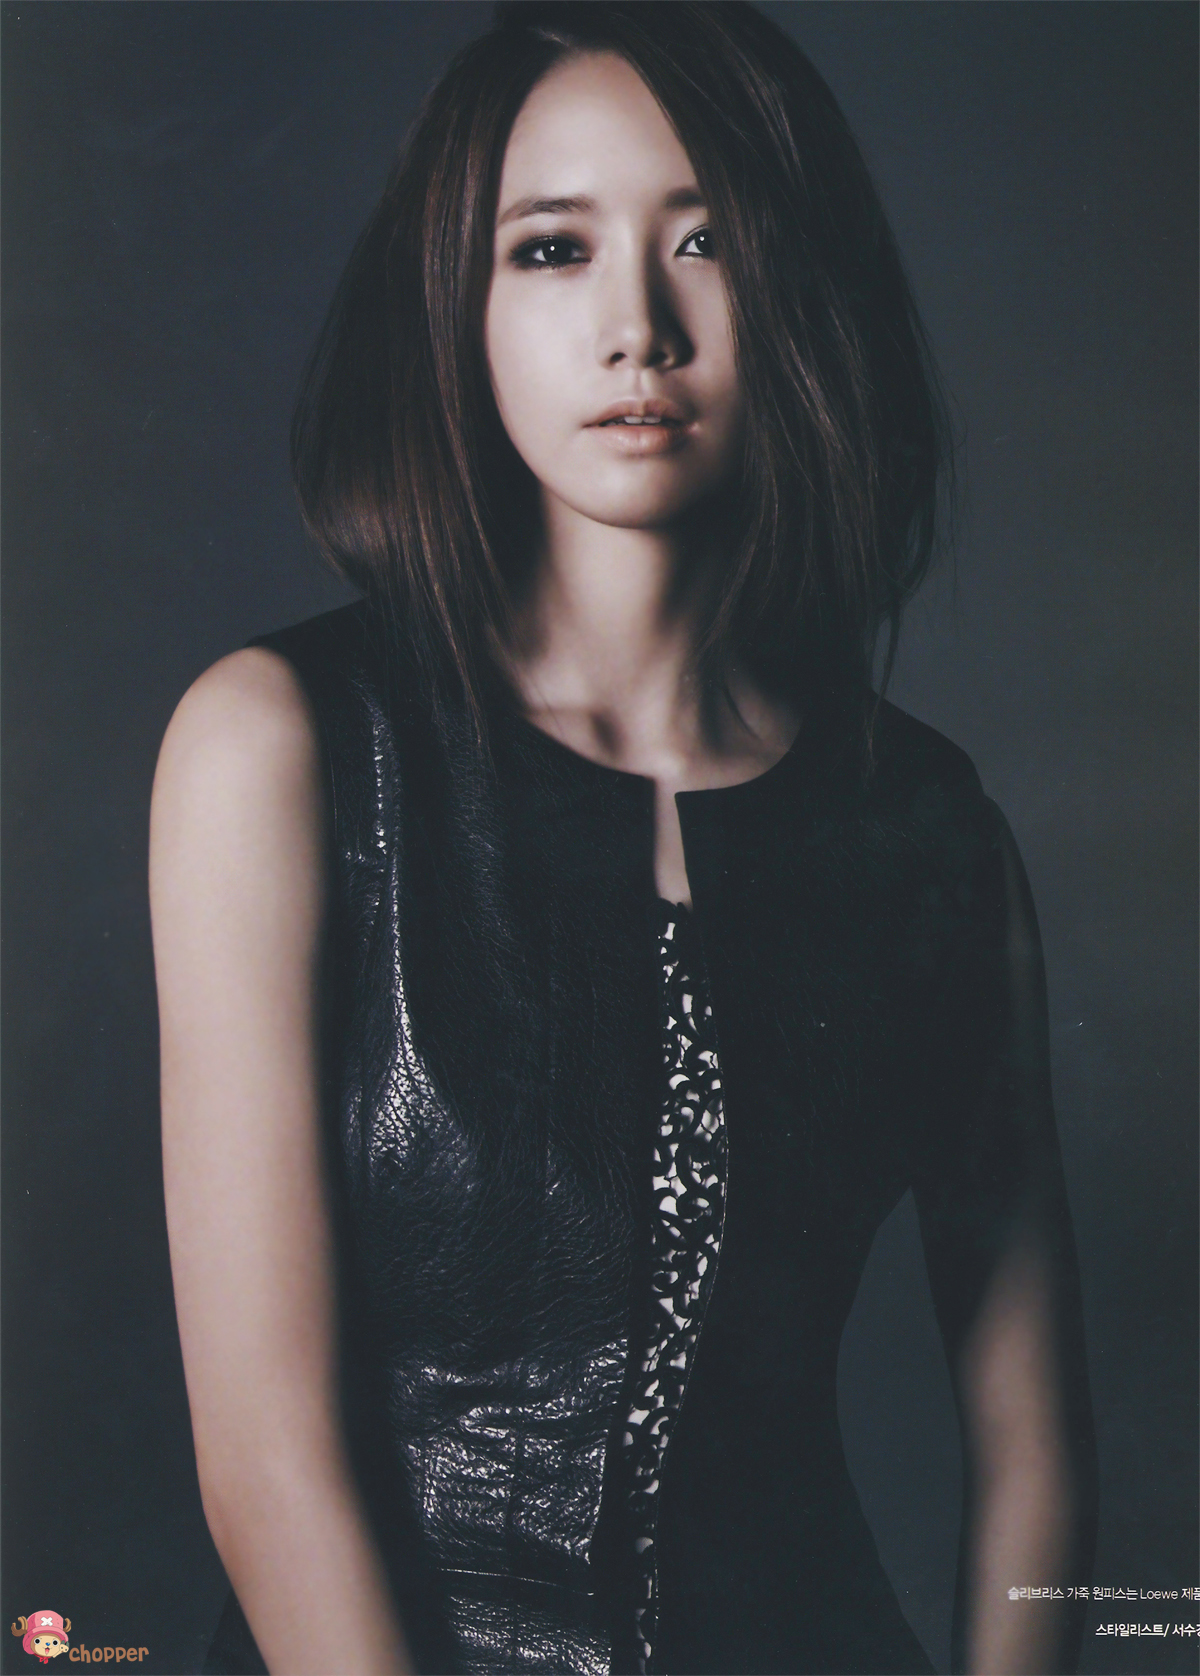 Snsd Yoona Harpers Bazaar Magazine